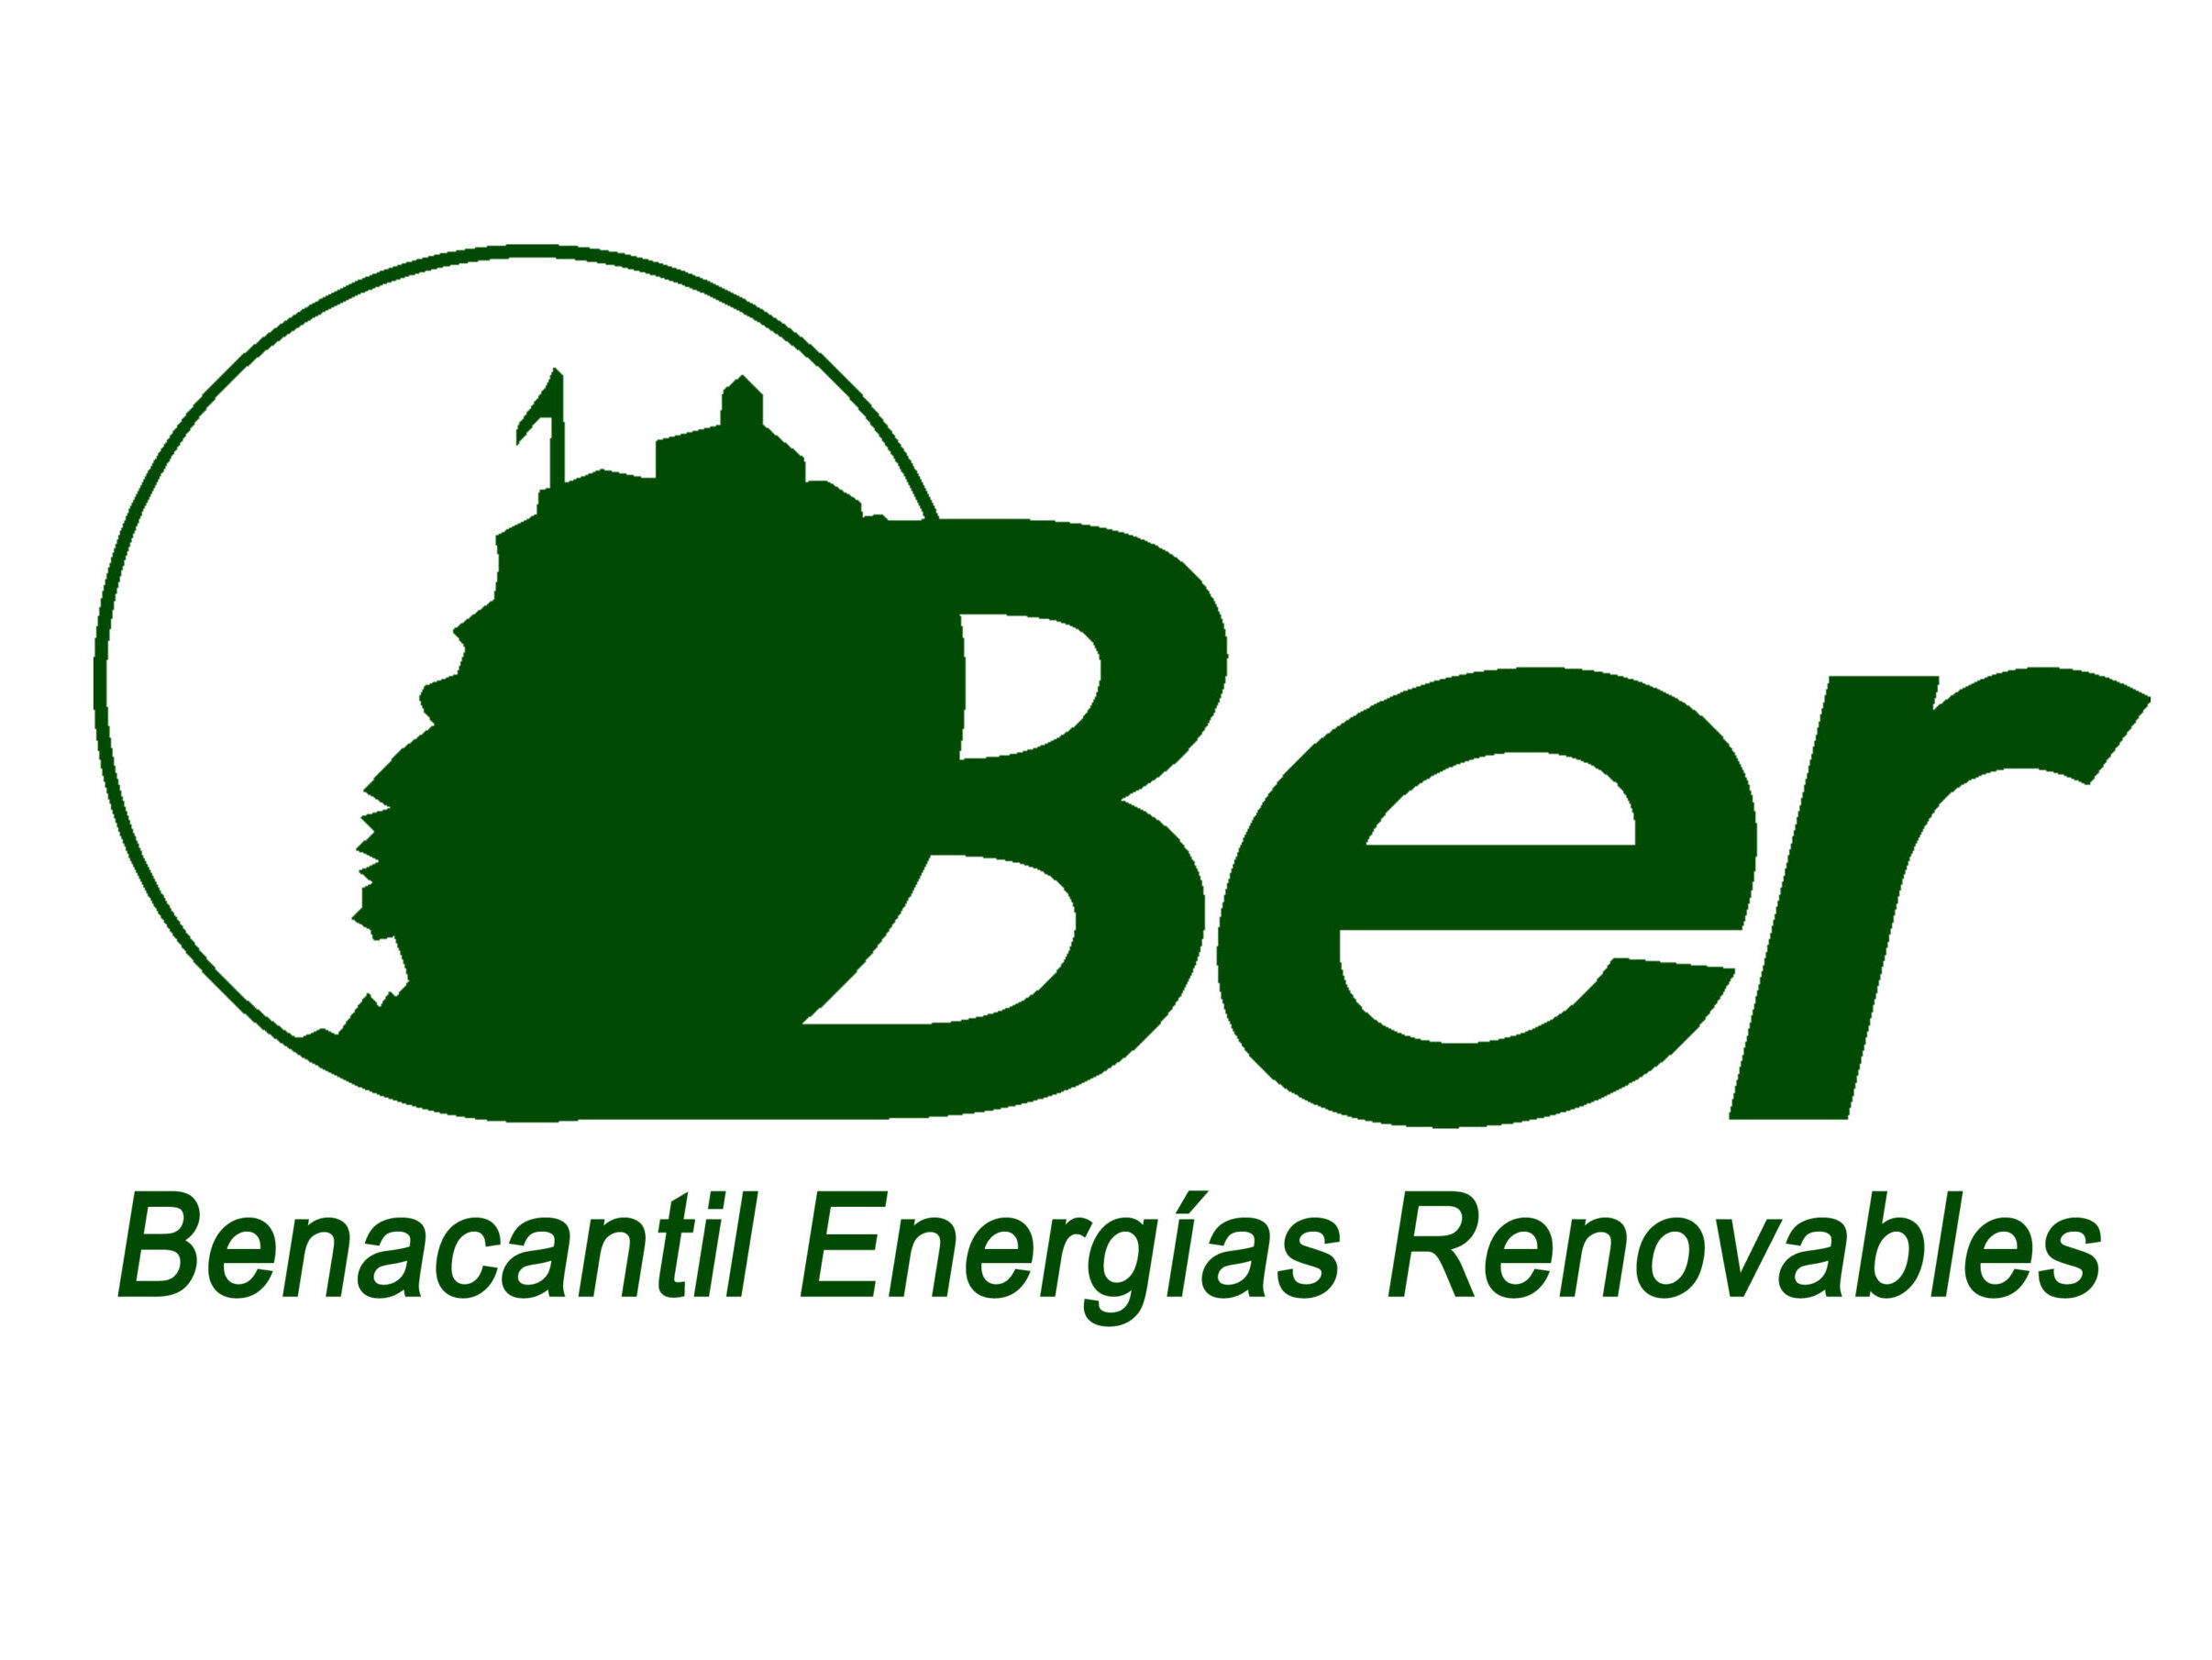 Benacantil Energías Renovables